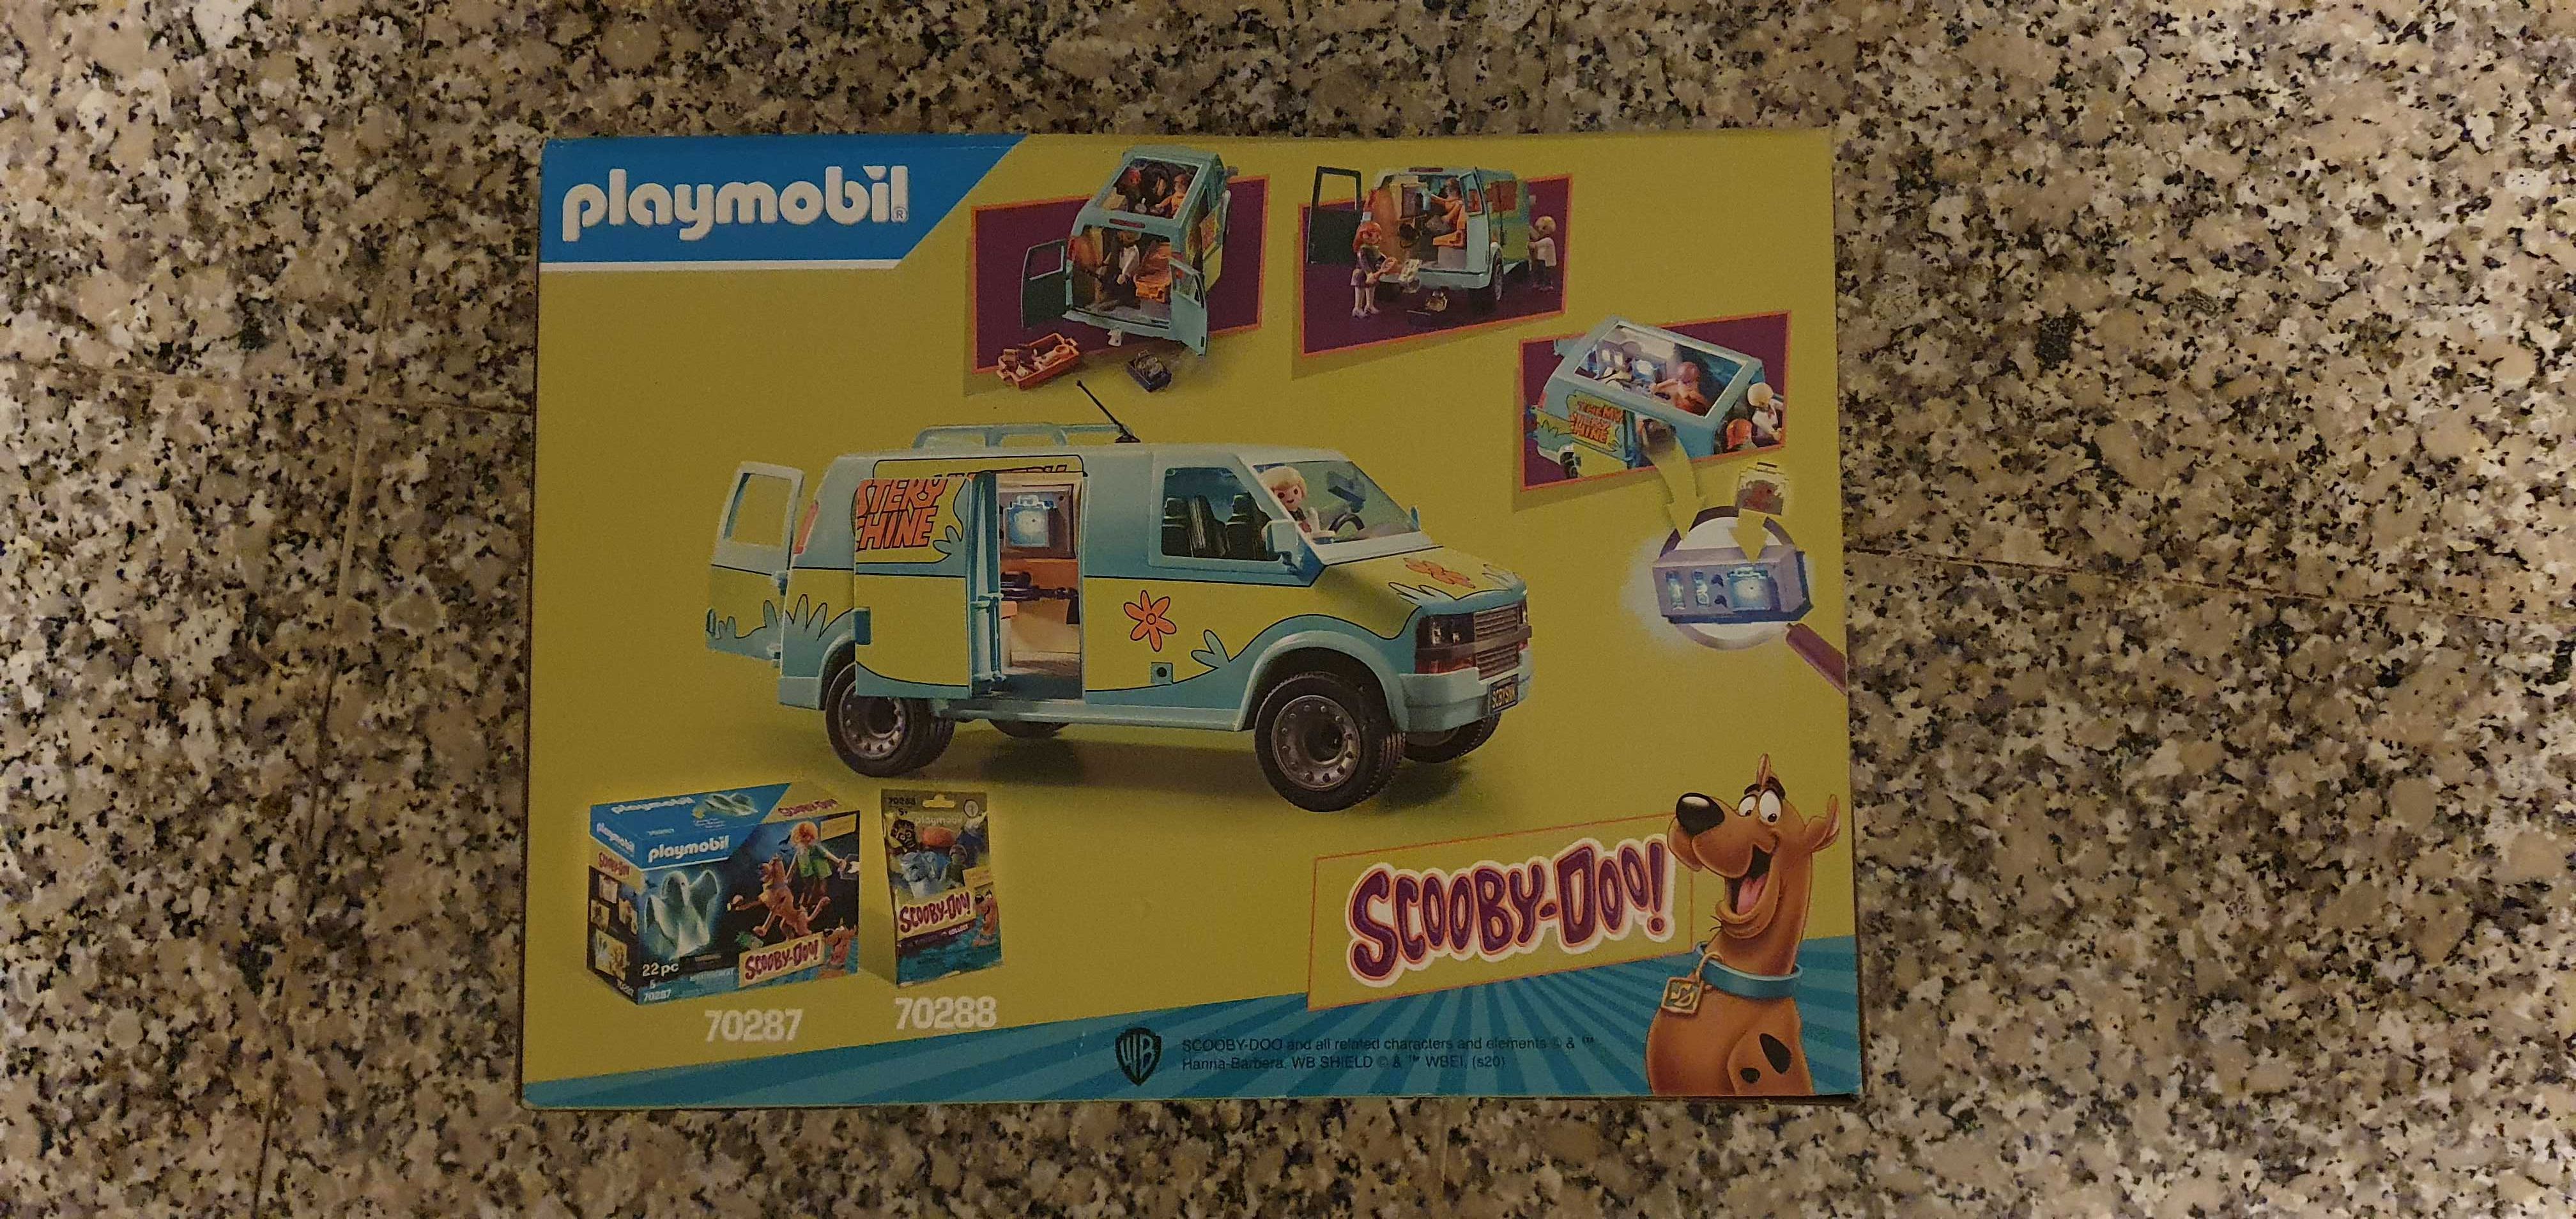 Lego 75138 + Playmobil 70317 e 70286